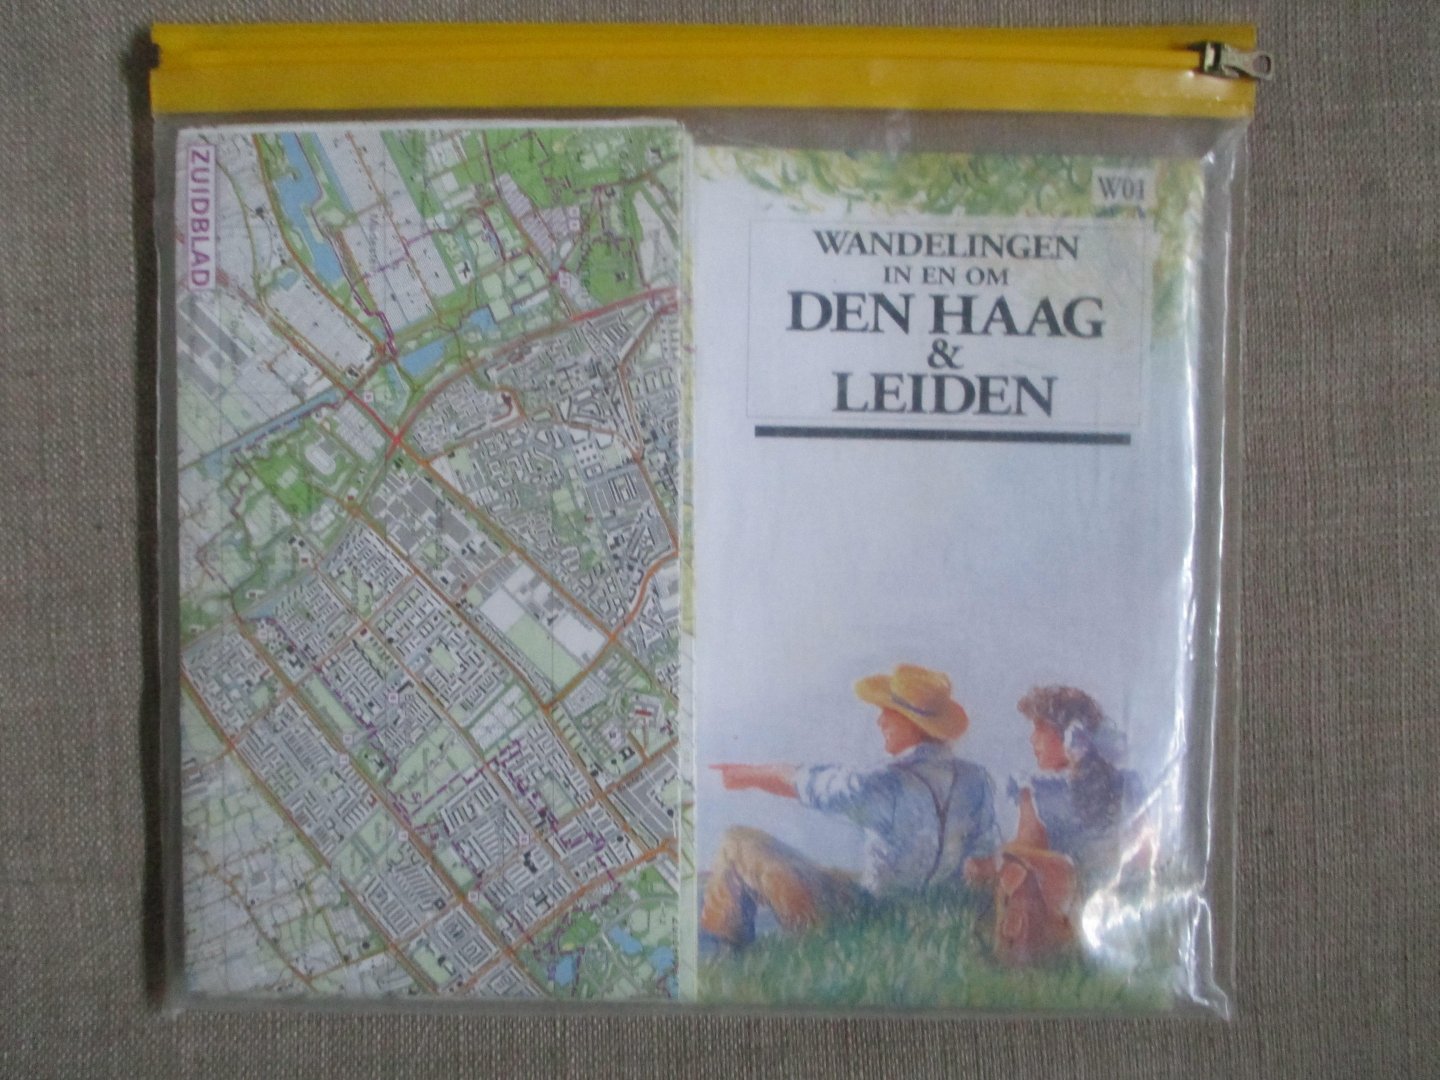  - Wandelingen in en om Den Haag & Leiden. 2 Grote stafkaarten 1:25.000, 23 beschreven wandelingen van 8 toto 22 km